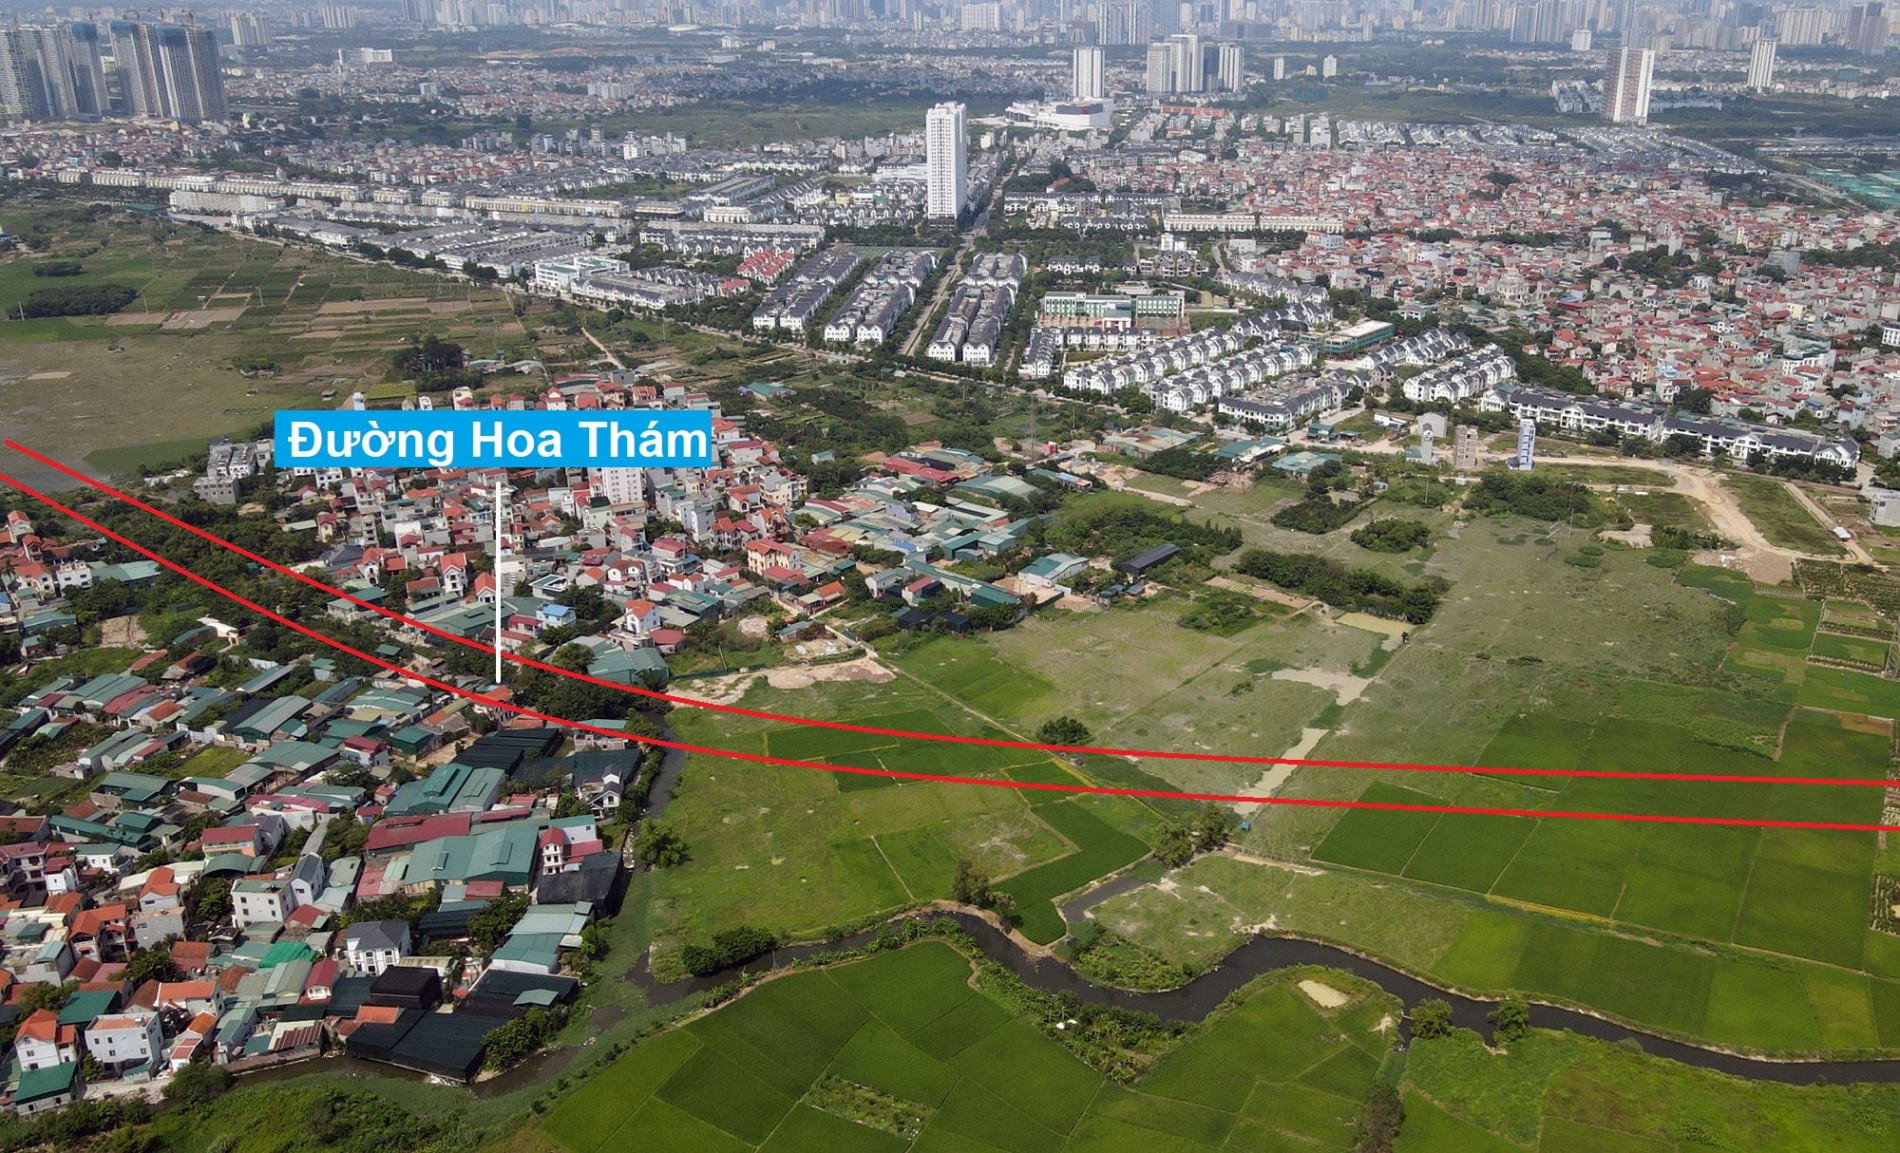 Đường sẽ mở theo quy hoạch ở xã La Phù, Hoài Đức, Hà Nội (phần 2)